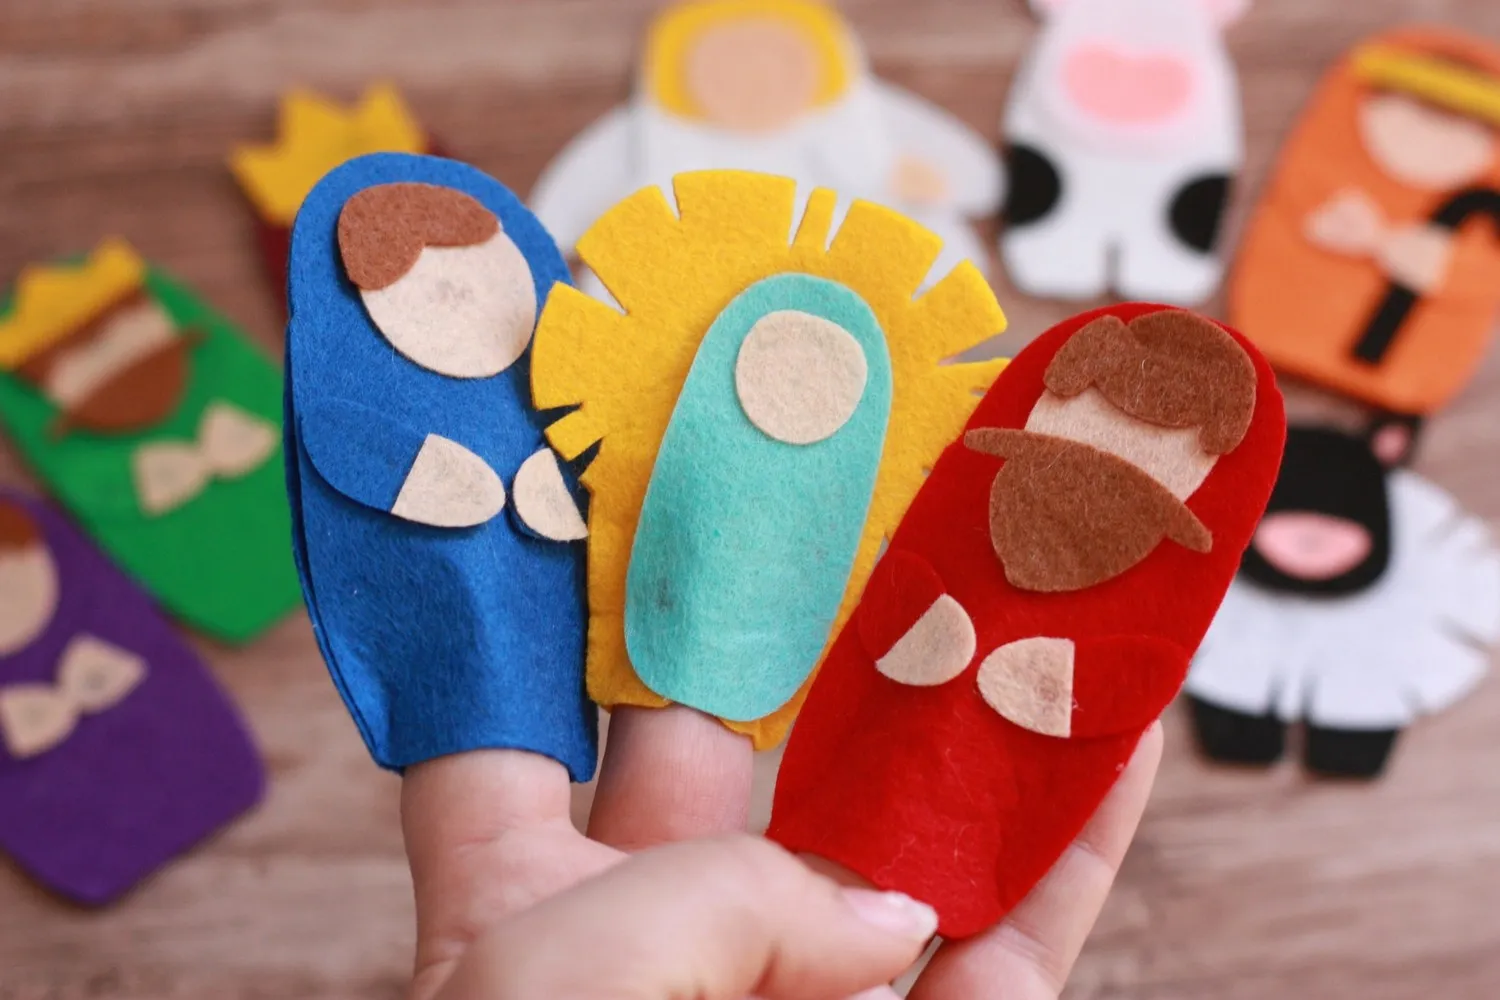 wholesale kids toy handmade animal felt finger puppet